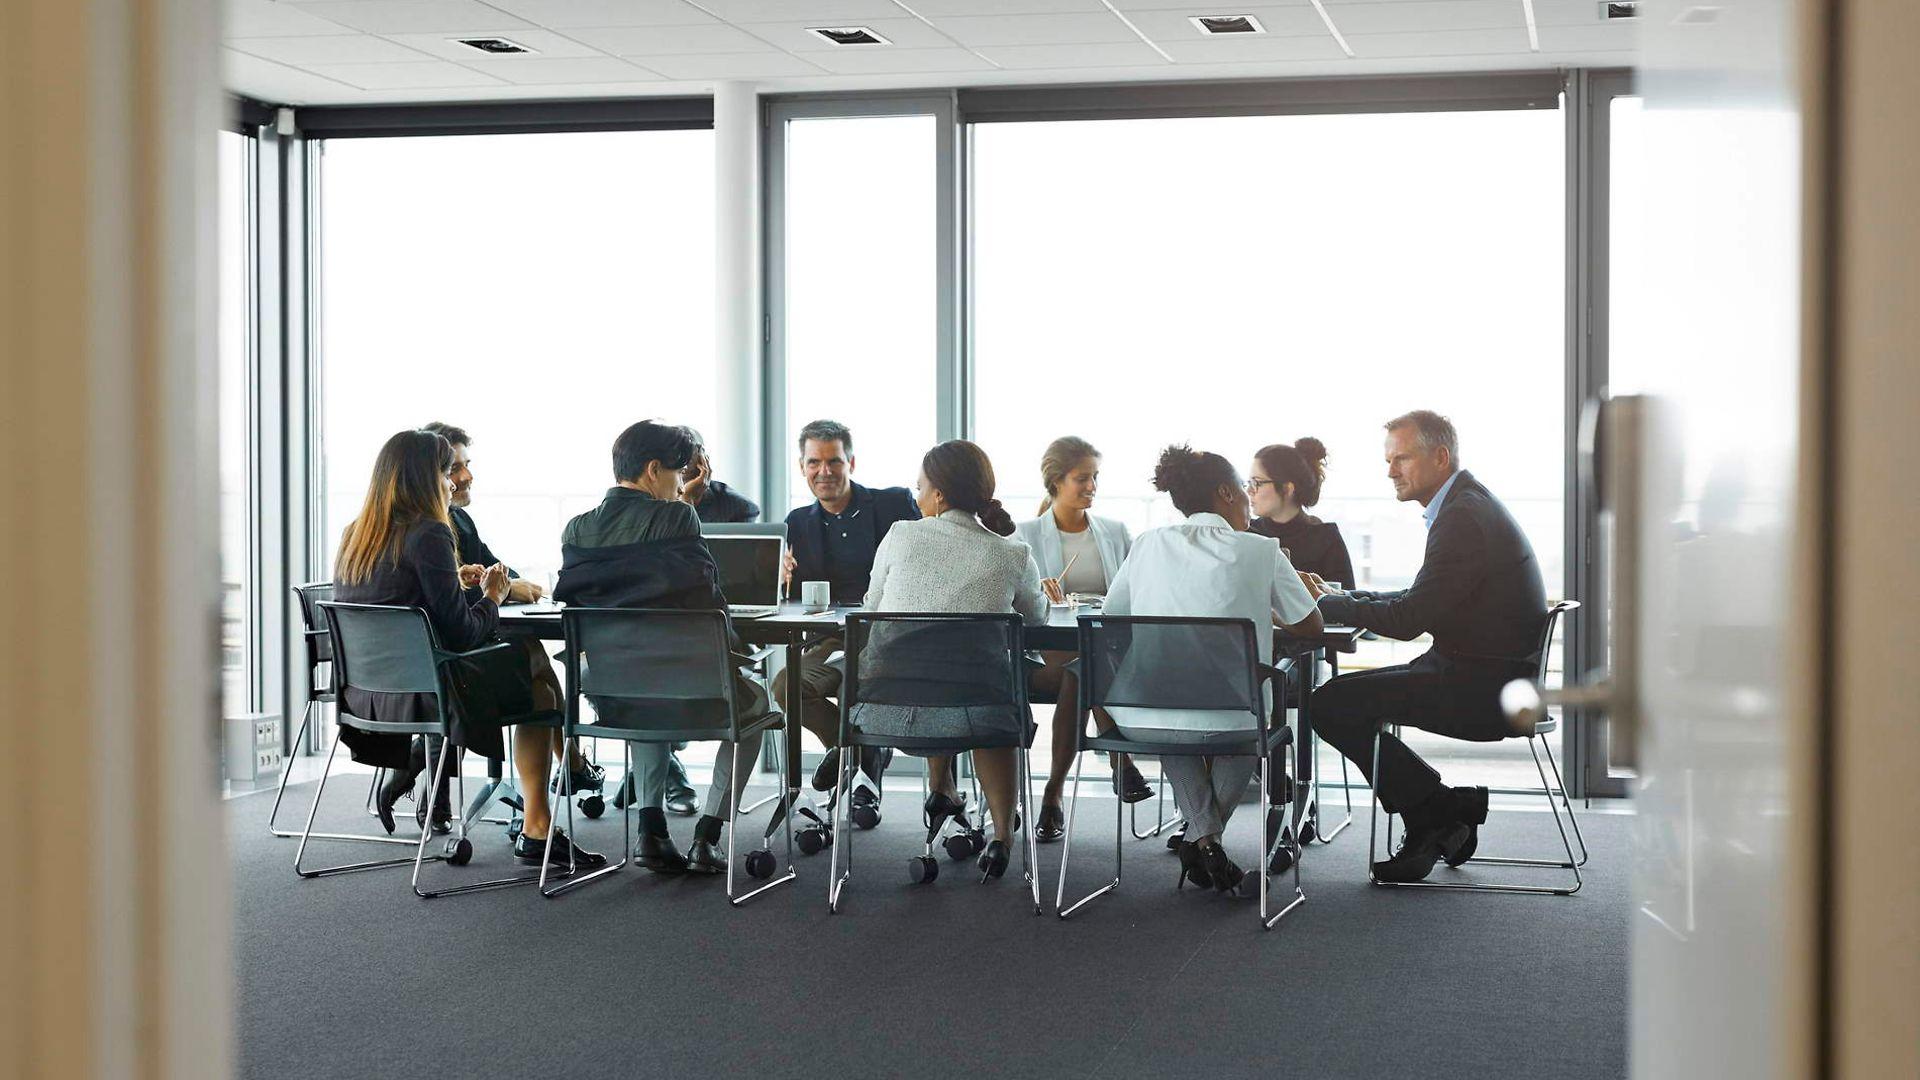 Bild: Symbolbild Menschen sitzen an einem Konferenztisch